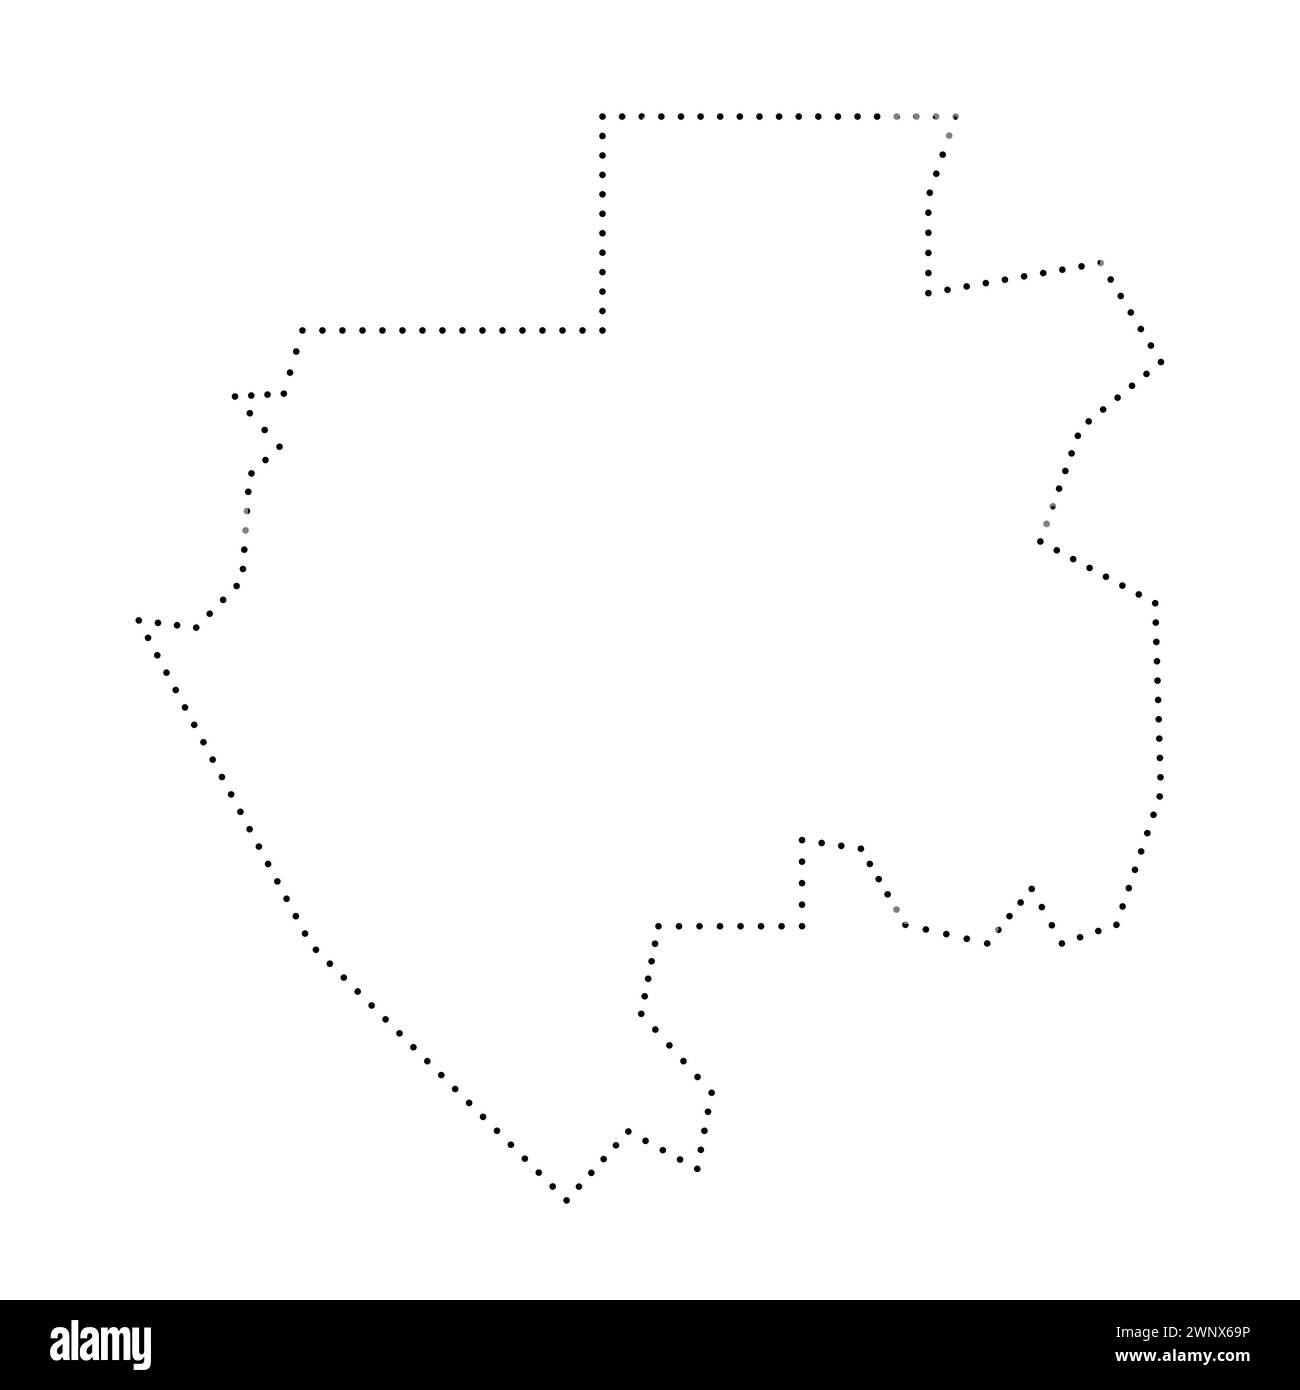 Vereinfachte Karte für Gabun. Schwarz gepunktete Kontur. Einfaches Vektorsymbol. Stock Vektor